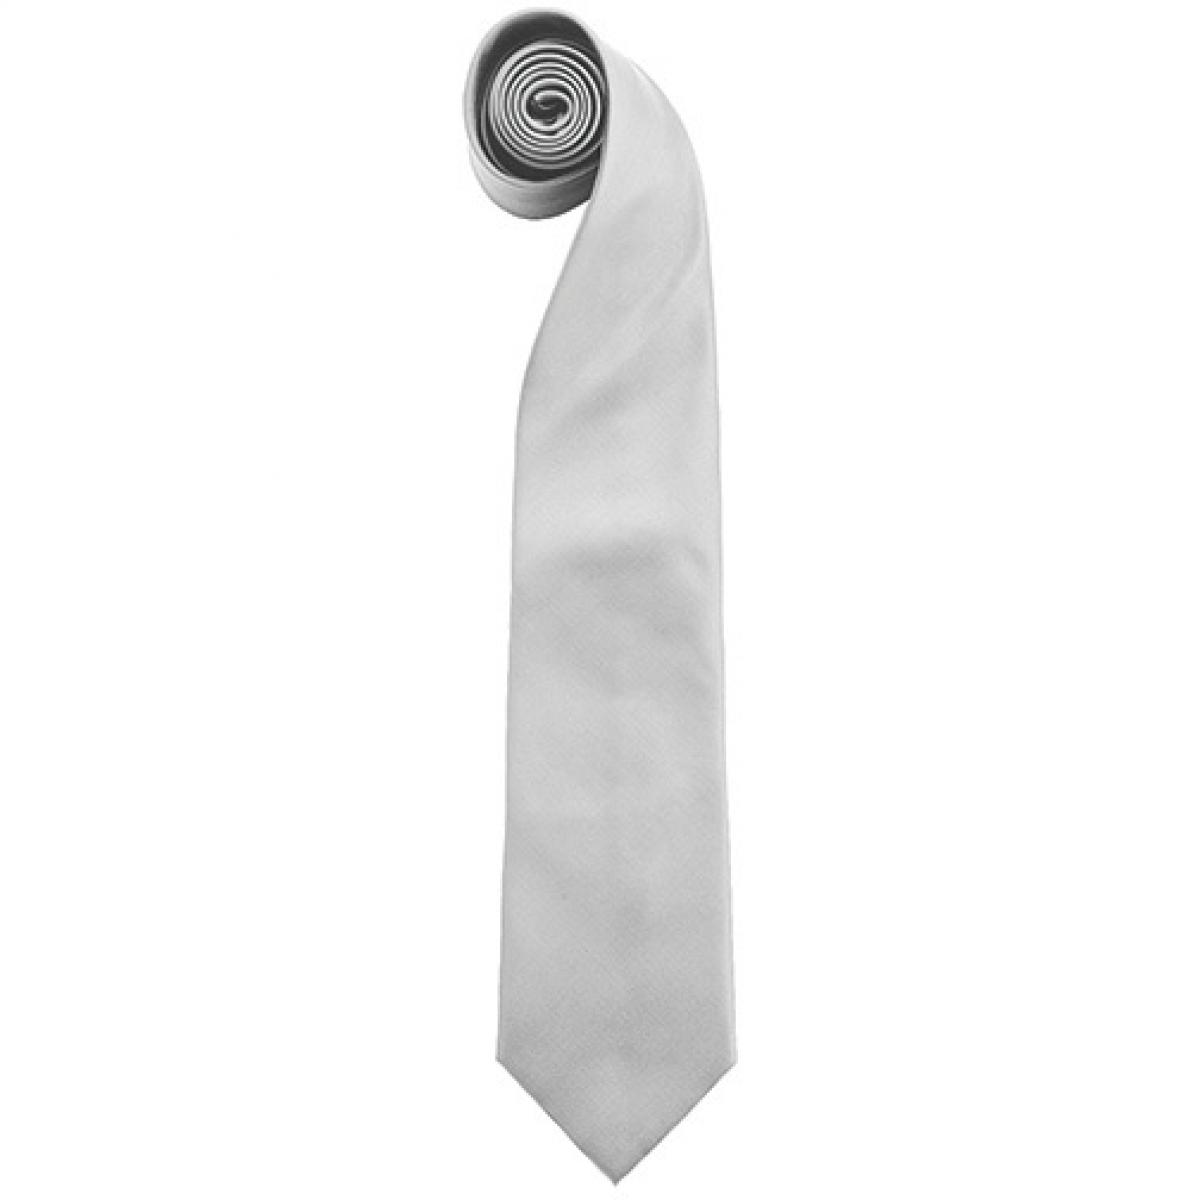 Hersteller: Premier Workwear Herstellernummer: PR765 Artikelbezeichnung: Krawatte Uni-Fashion / Colours Farbe: Pale Grey (Silver) (ca. Pantone 420 C)